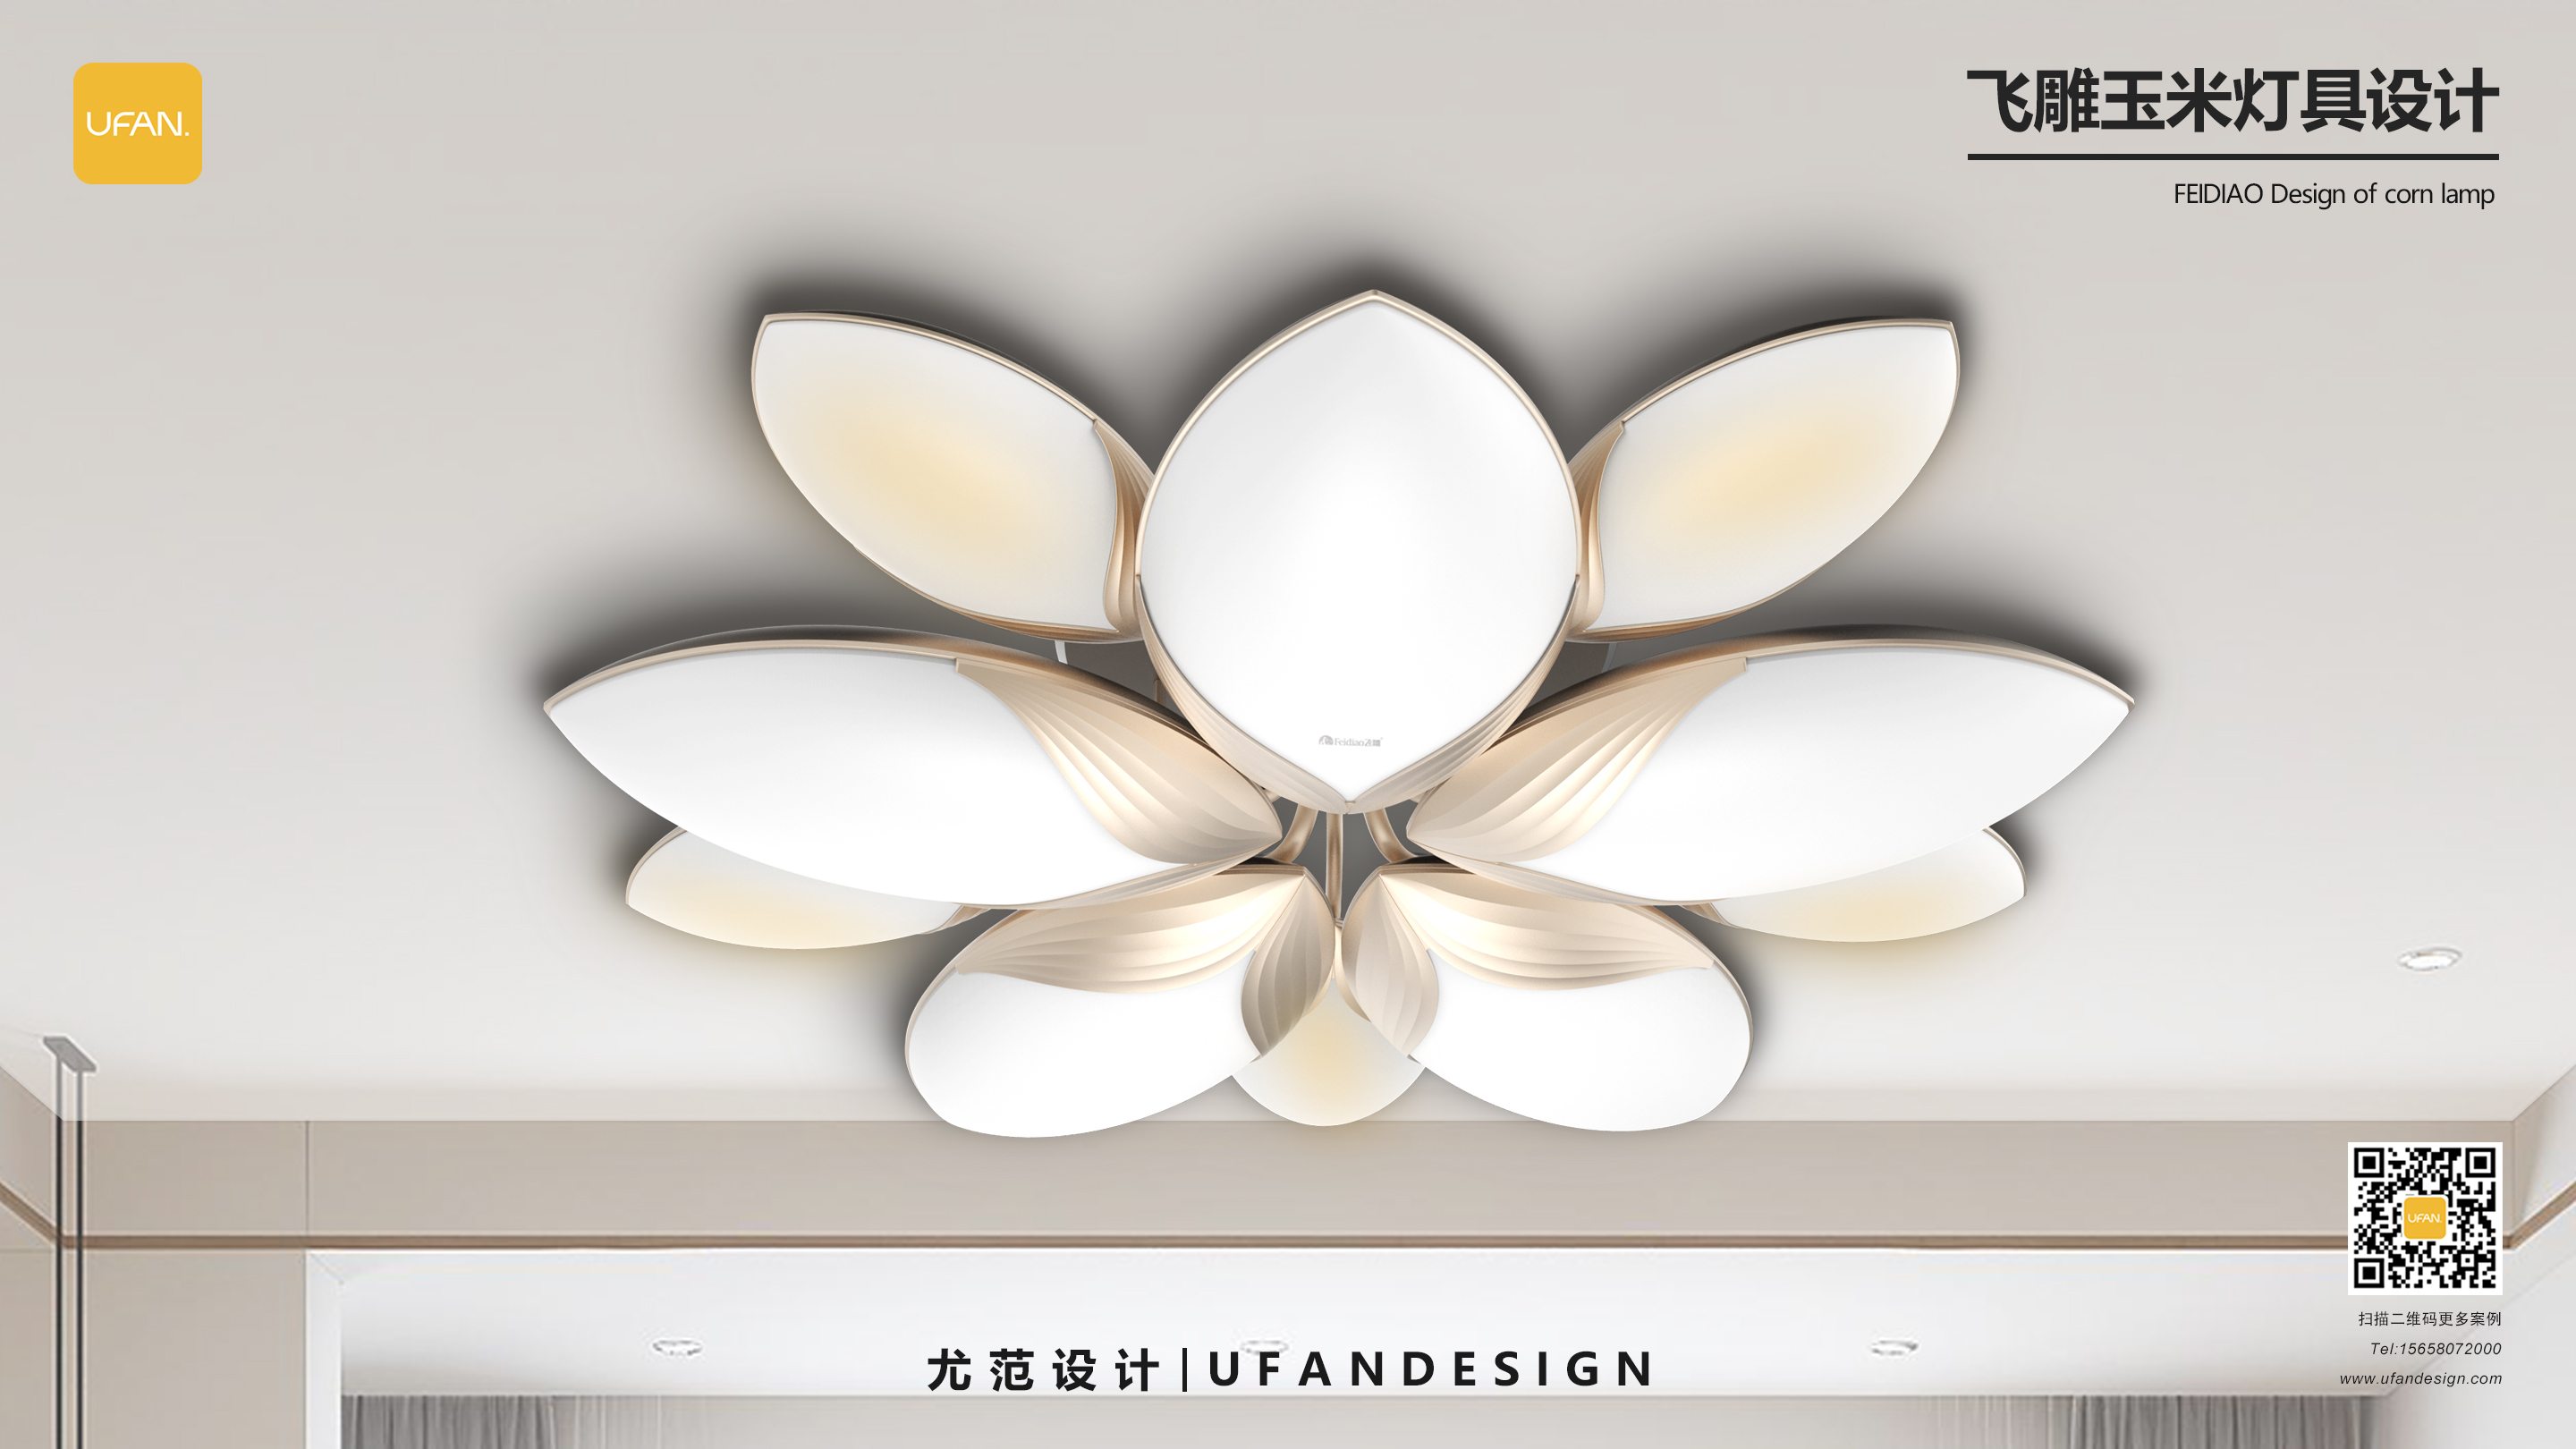 杭州尤范设计工业设计公司-飞雕灯具设计公司-灯具外观设计02.jpg